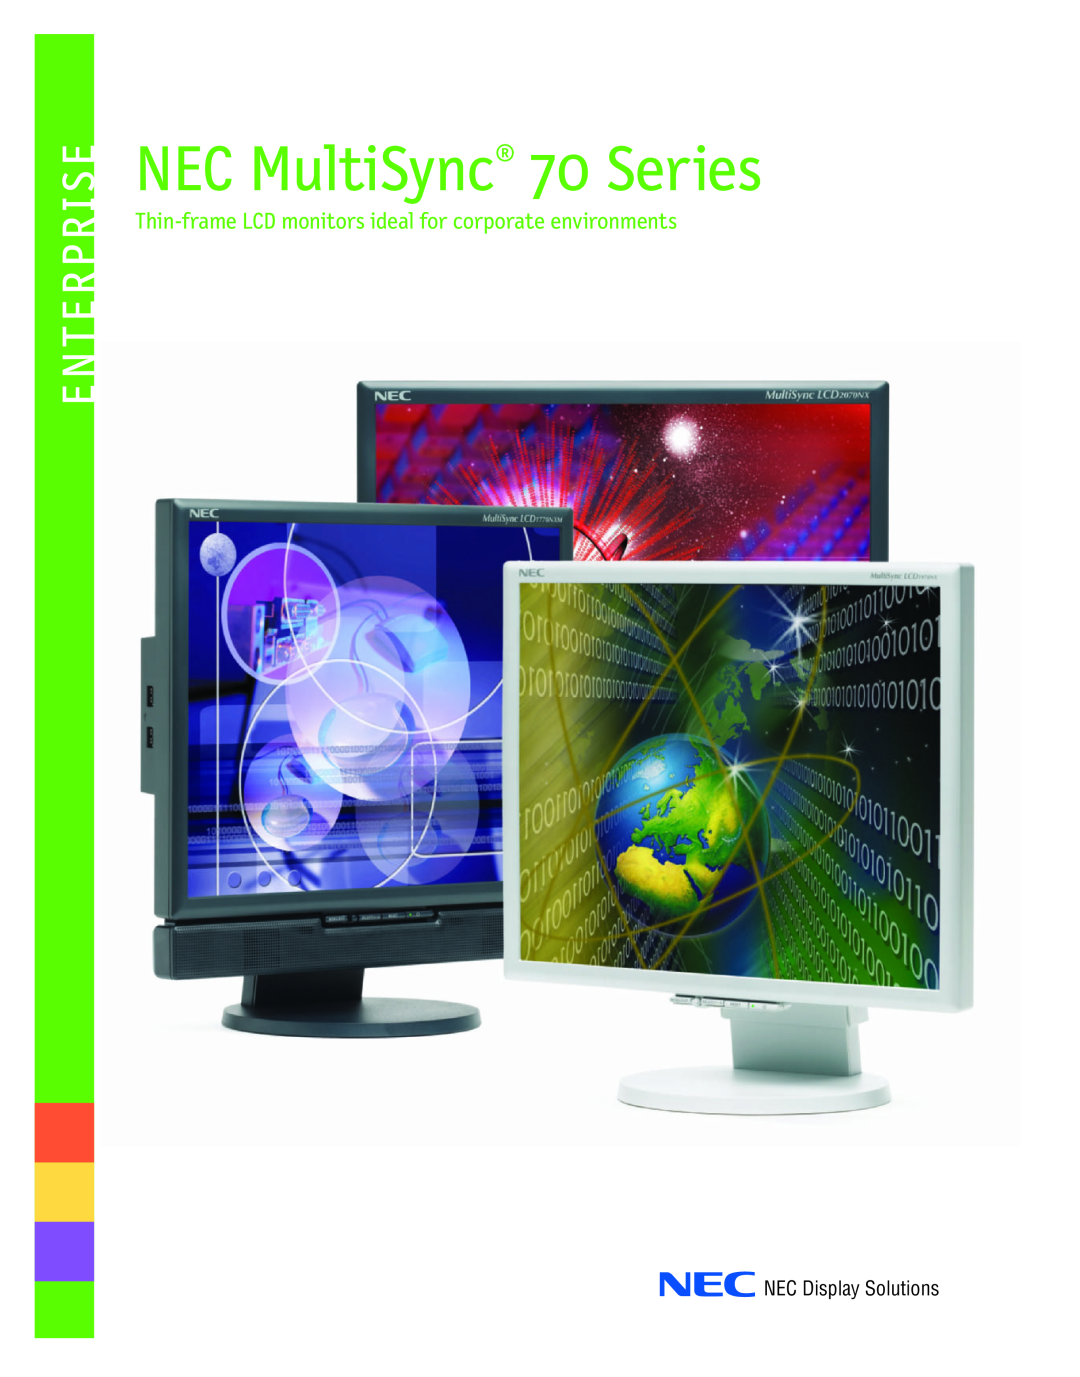 NEC manual NEC MultiSync70 Series, Enterprise, NEC Display Solutions 